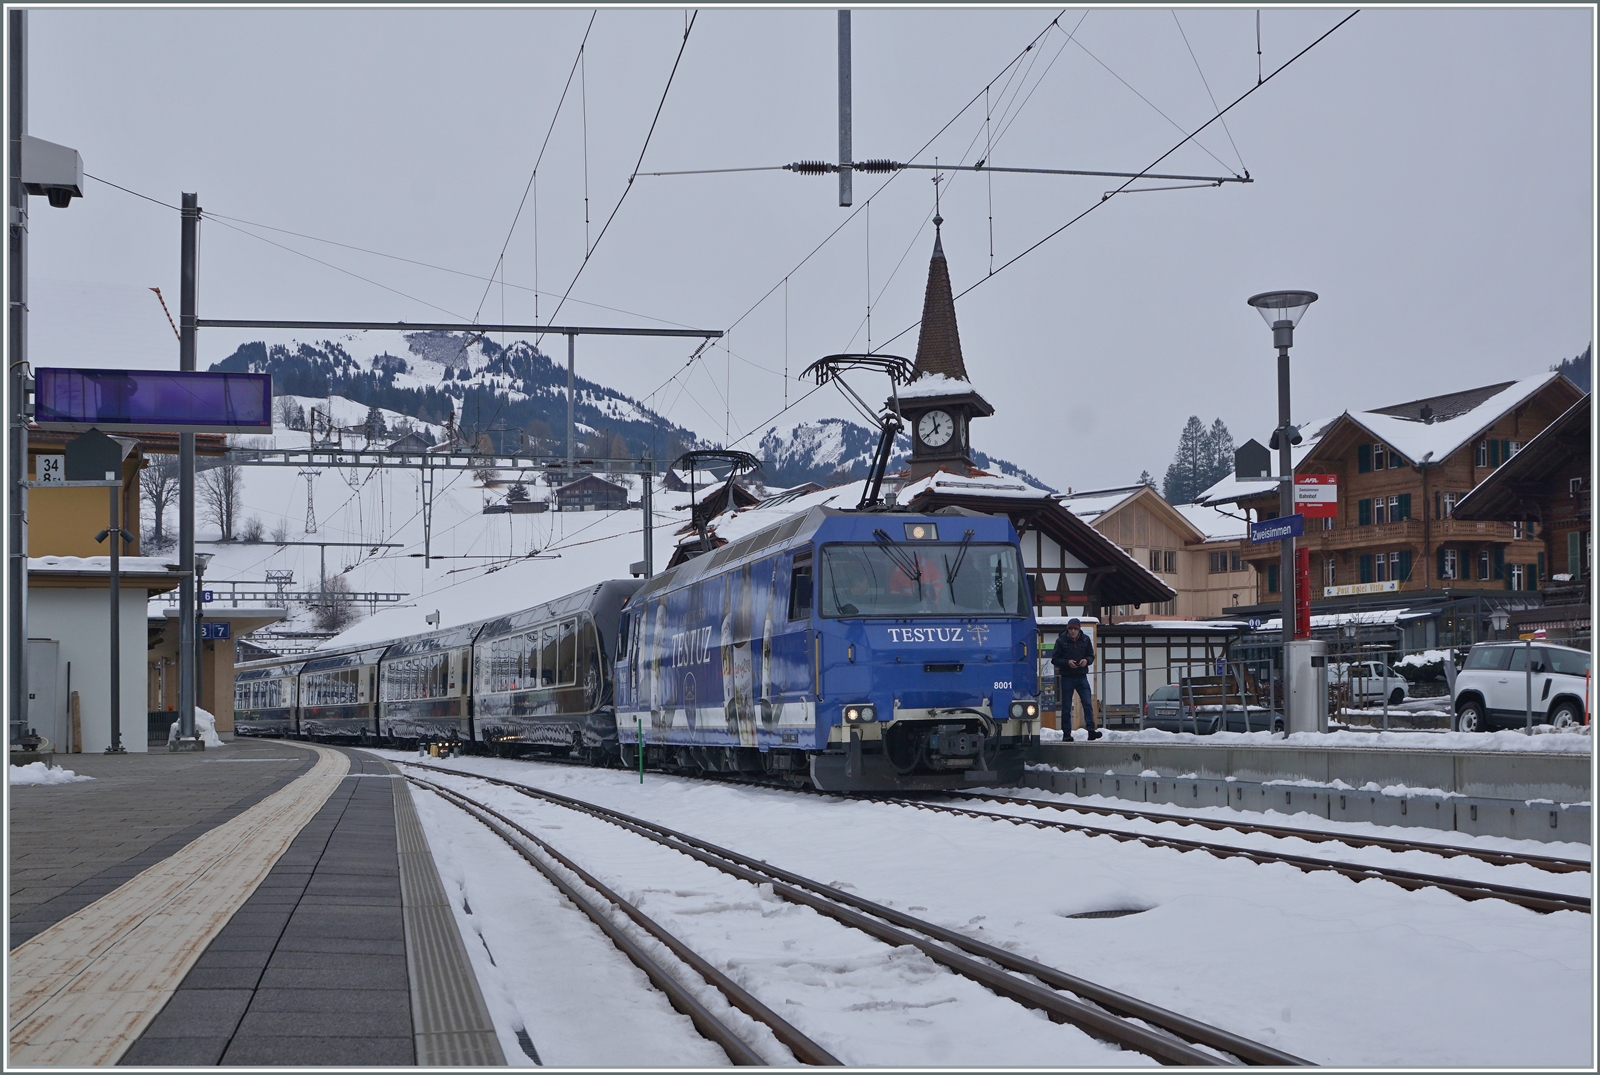 Bisher war das hübschen Türmchen des Bahnhofs von Zweisimmen als Hintergrund Normalspurfahrzeugen vorbehalten, doch mit den neuen GPX Goldenpass Zügen von Montreux nach Interlaken Ost zeigen sich nun auch MOB Ge 4/4 (Serie 8000) hier. Die MOB Ge 4/4 8001 ist mit ihrem GPX GoldenPass Express 4068 von Montreux nach Interlaken in Zweisimmen angekommen und wird nun der BLS Lok die Weiterführung des bereits umgespurten Zuges überlassen.

15. Dezember 2022 